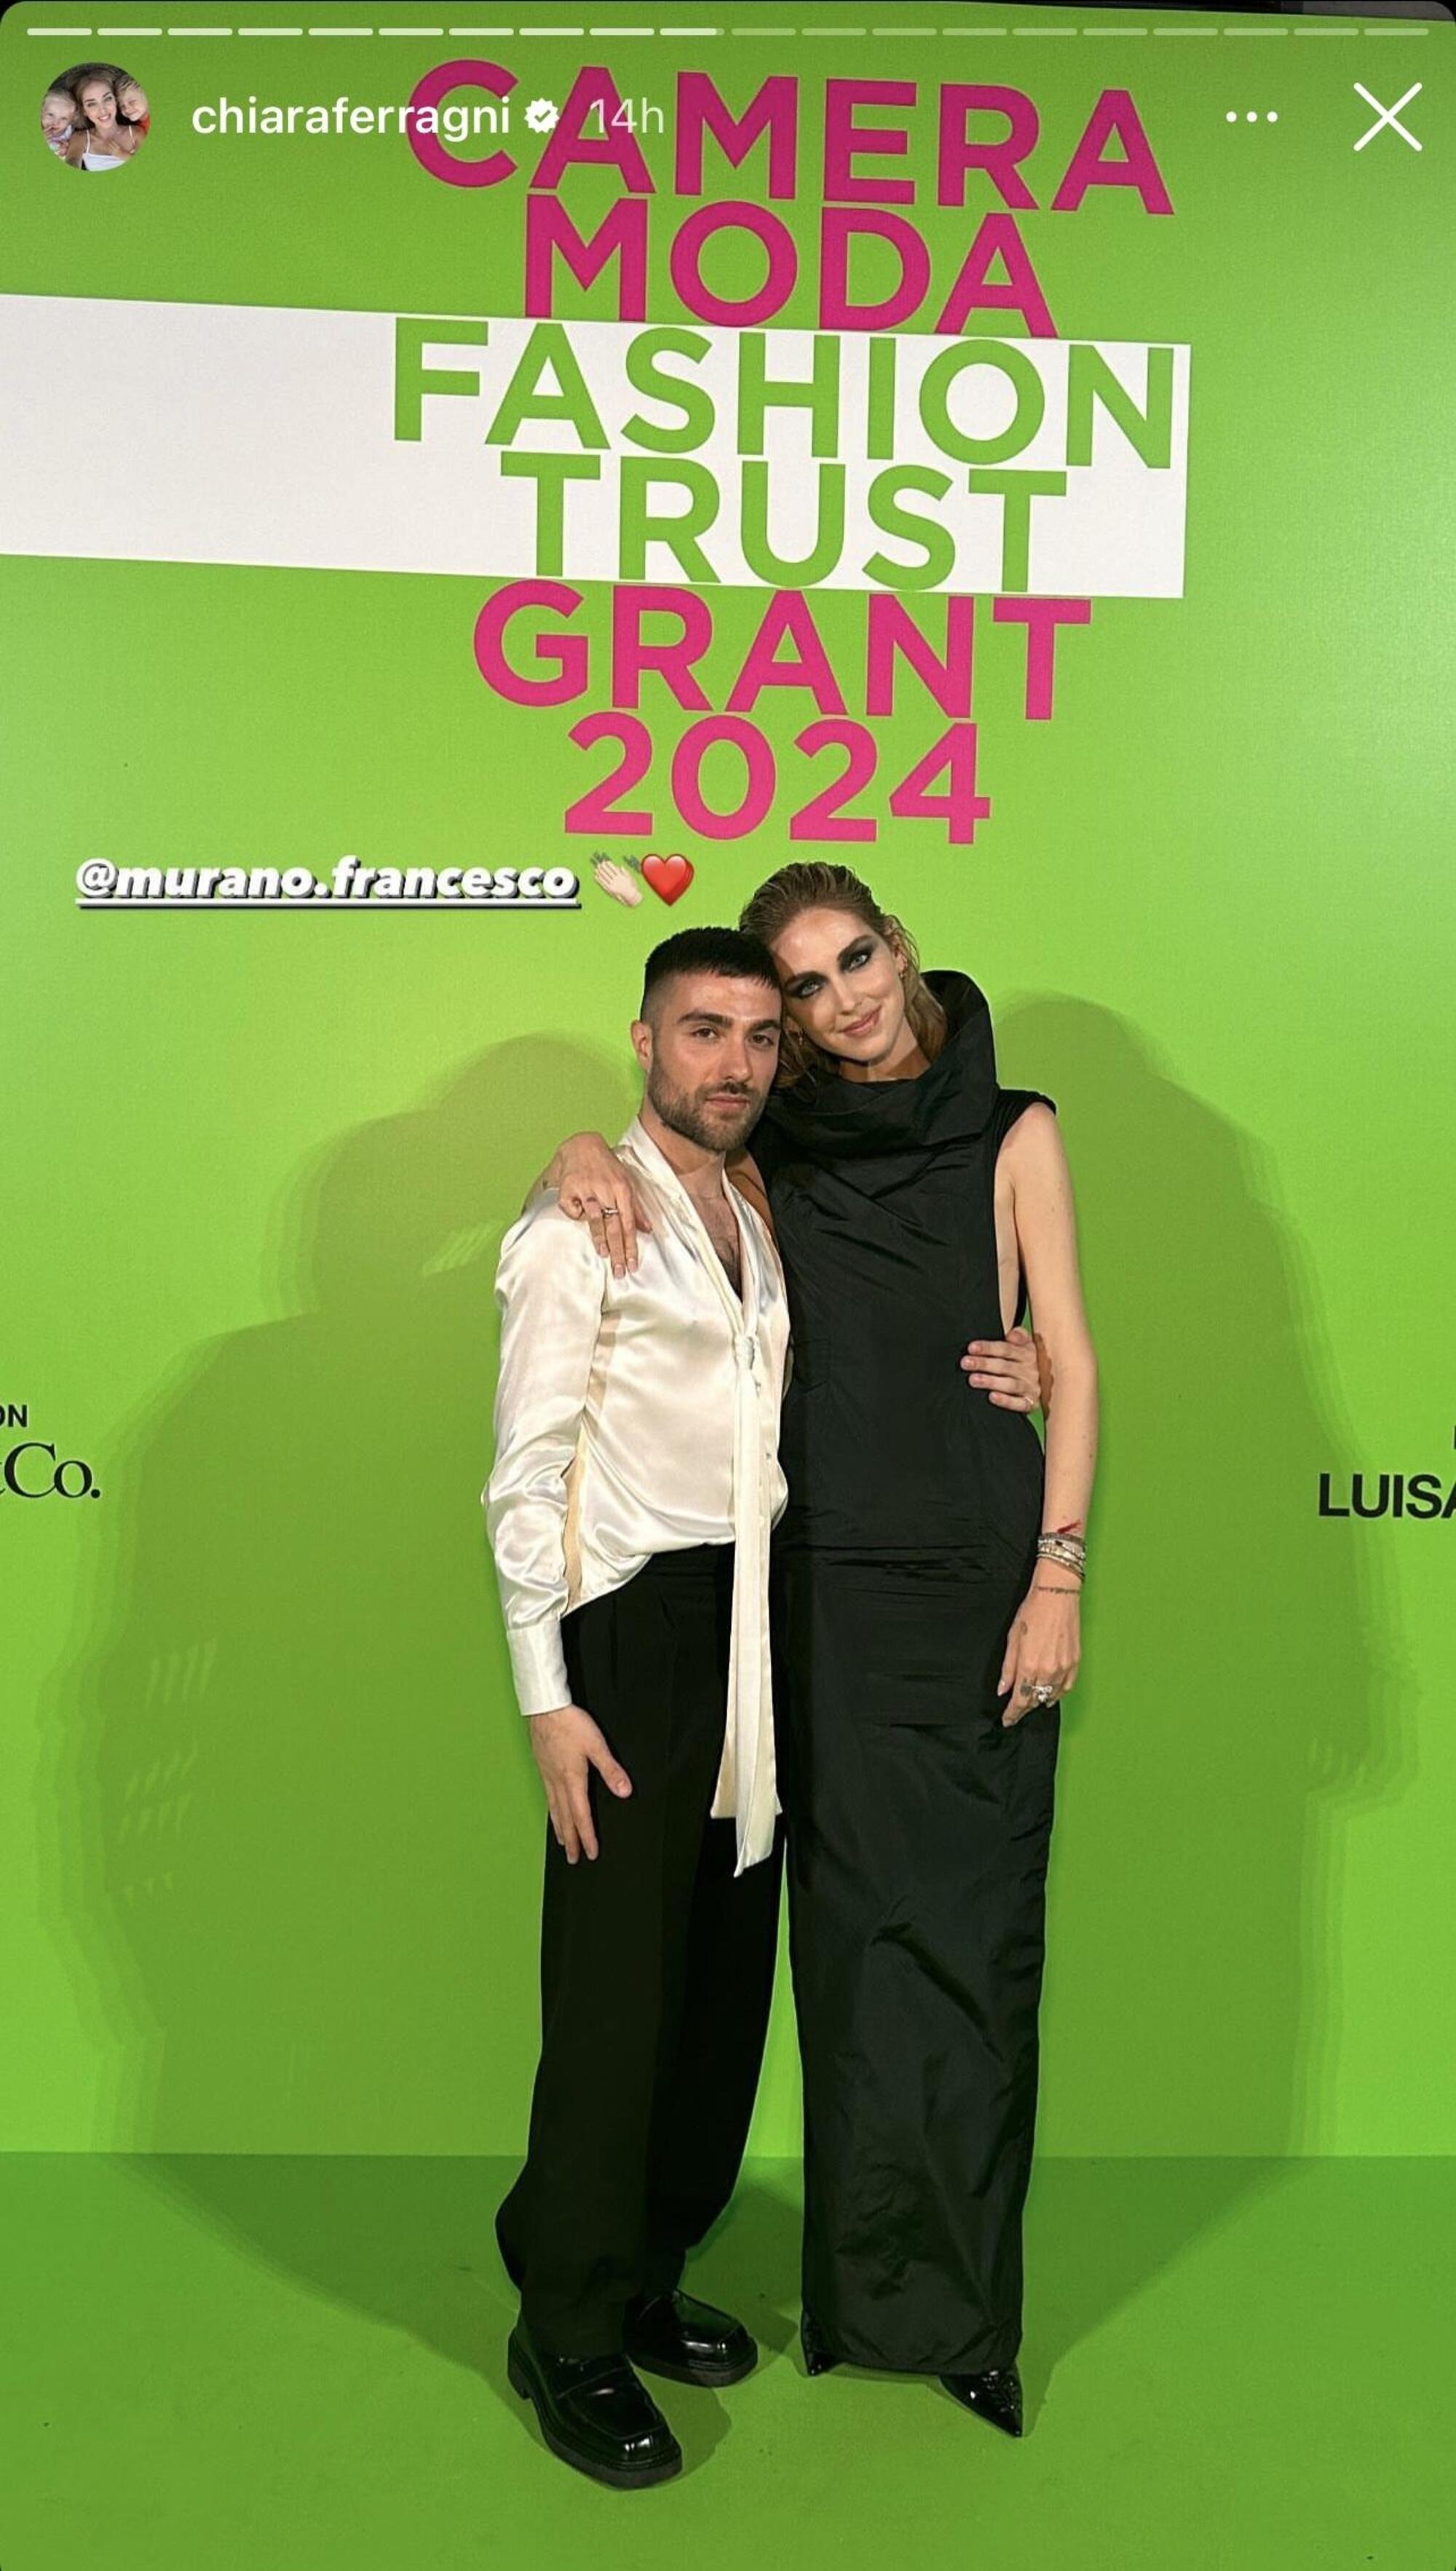 Chiara Ferragni e Francesco Murano